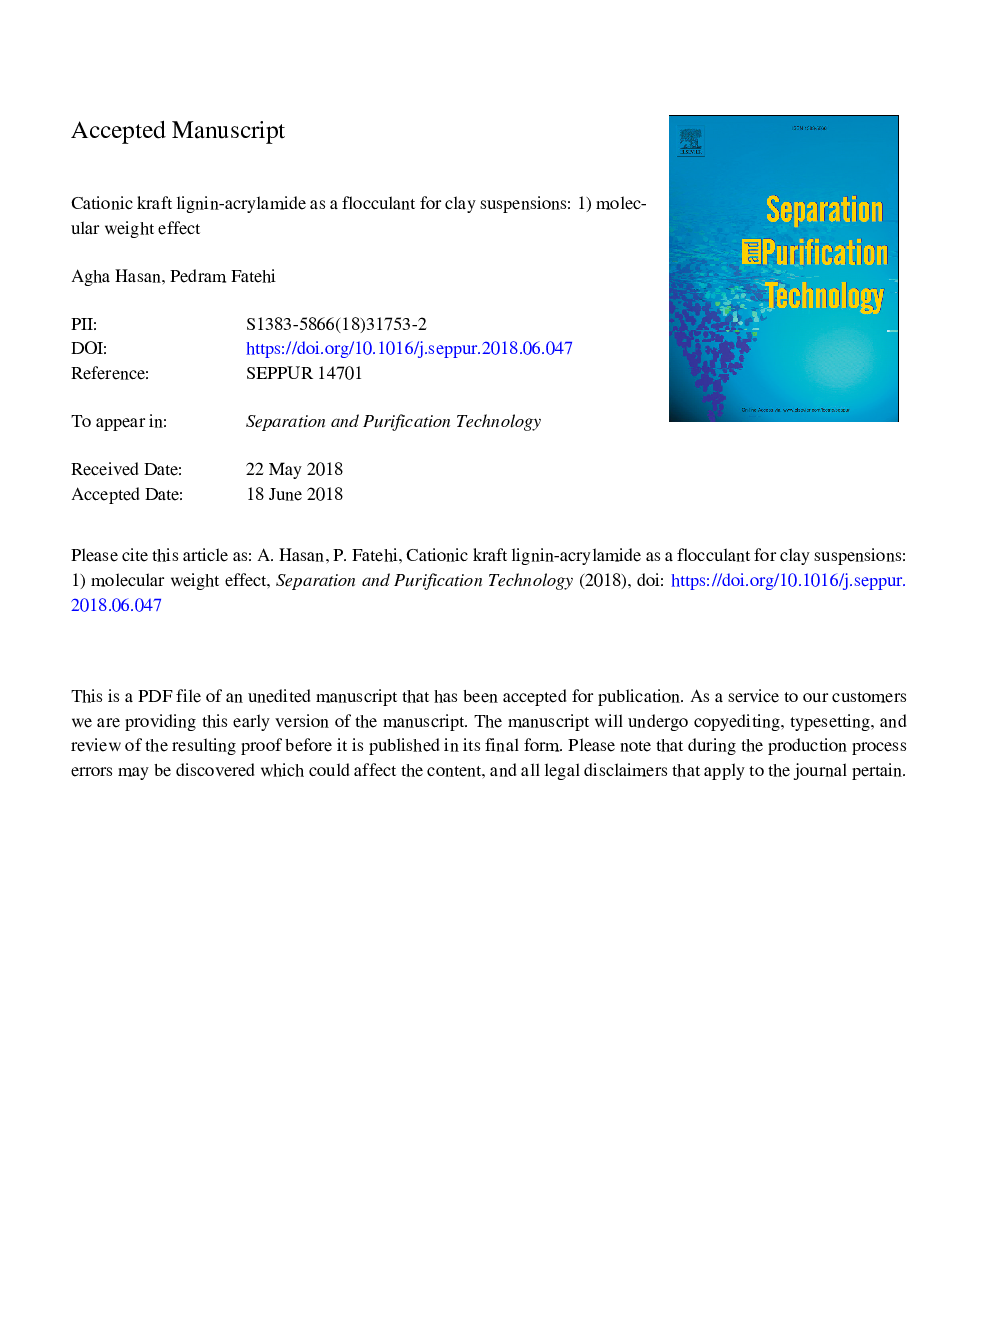 کاتیون کرافت لیگنین آکریل آمید به عنوان یک فلکشن برای رسوبات رس: 1. اثر وزن مولکولی 